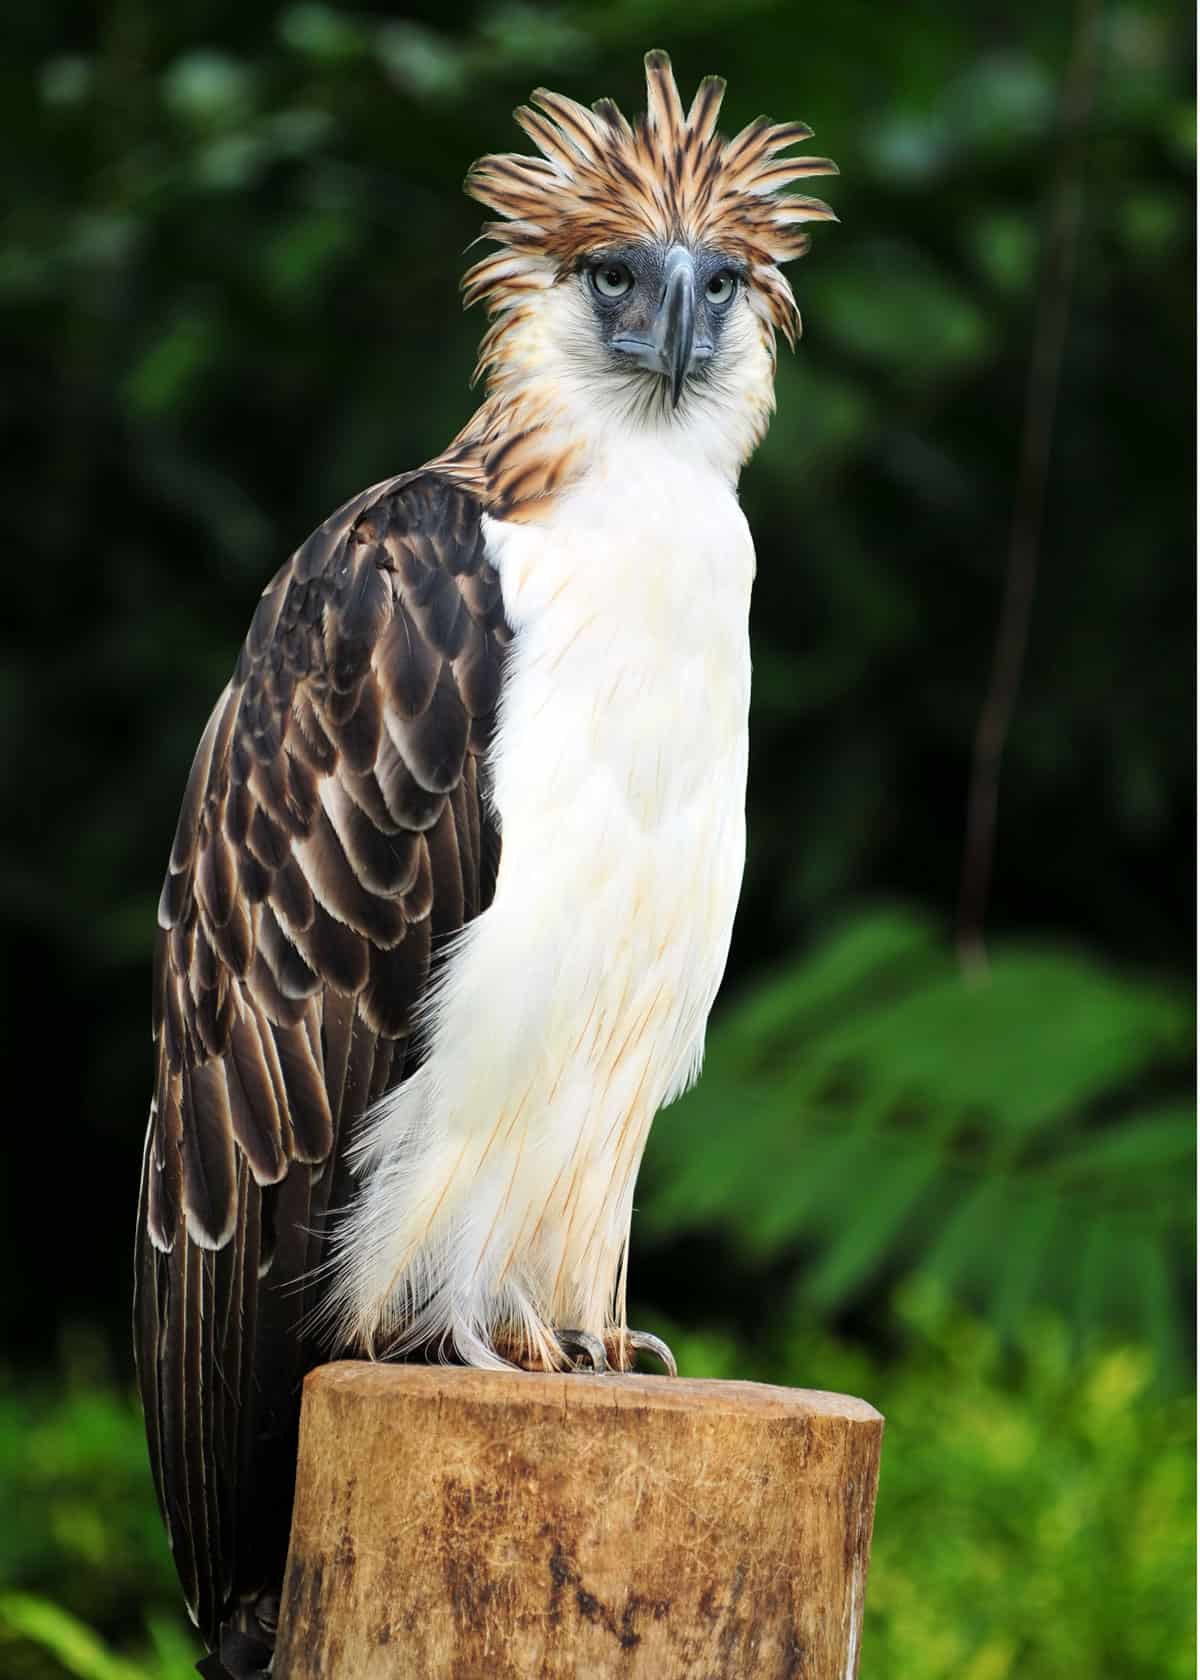 Philippine eagle Pithecophaga jefferyi